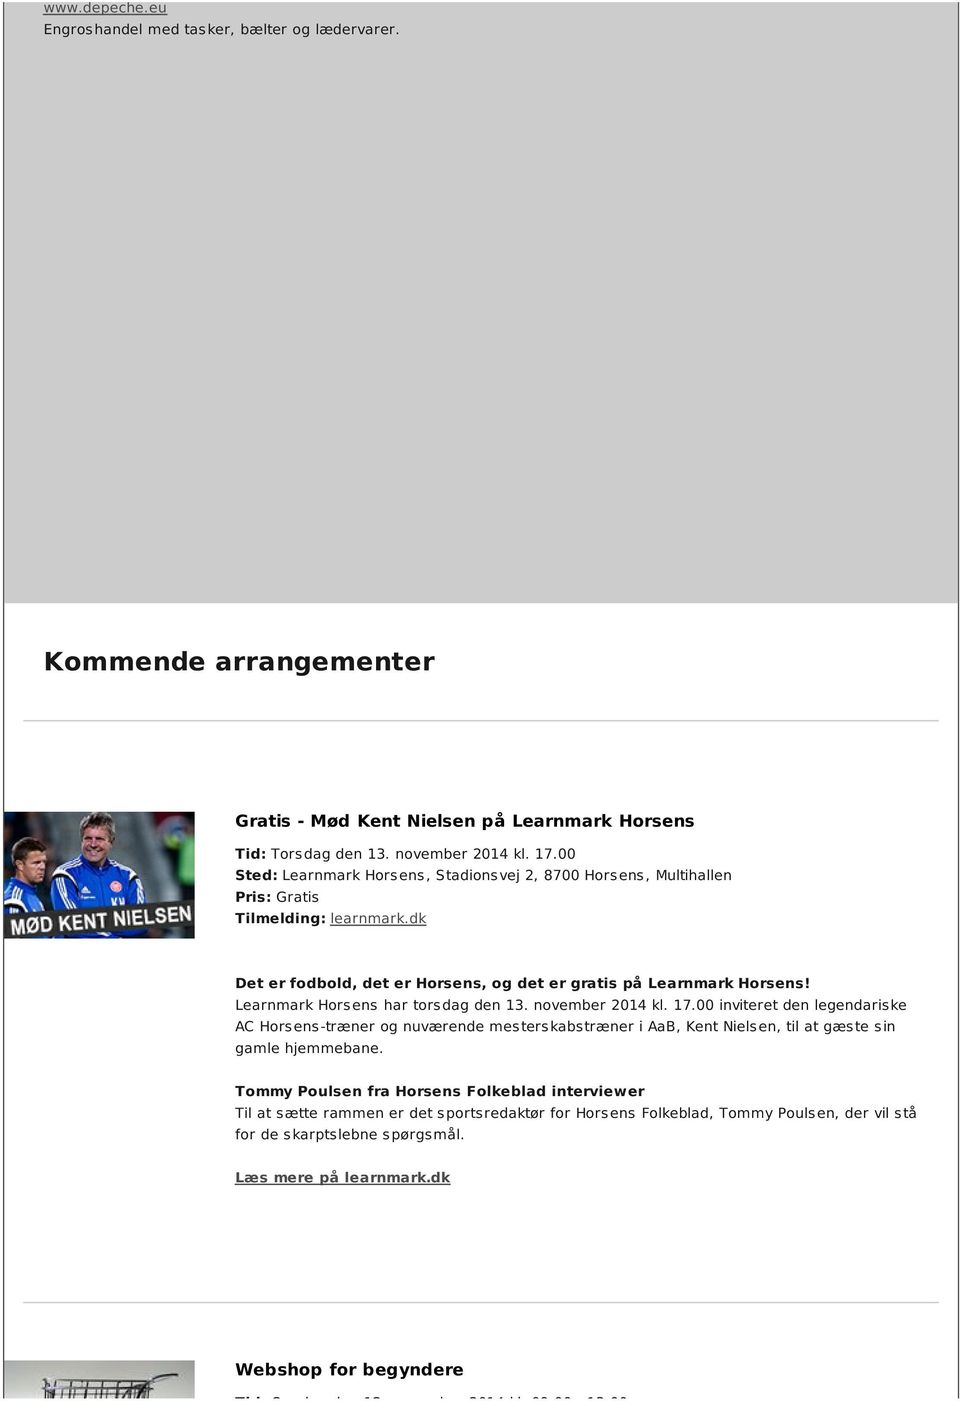 Learnmark Horsens har torsdag den 13. november 2014 kl. 17.00 inviteret den legendariske AC Horsens-træner og nuværende mesterskabstræner i AaB, Kent Nielsen, til at gæste sin gamle hjemmebane.